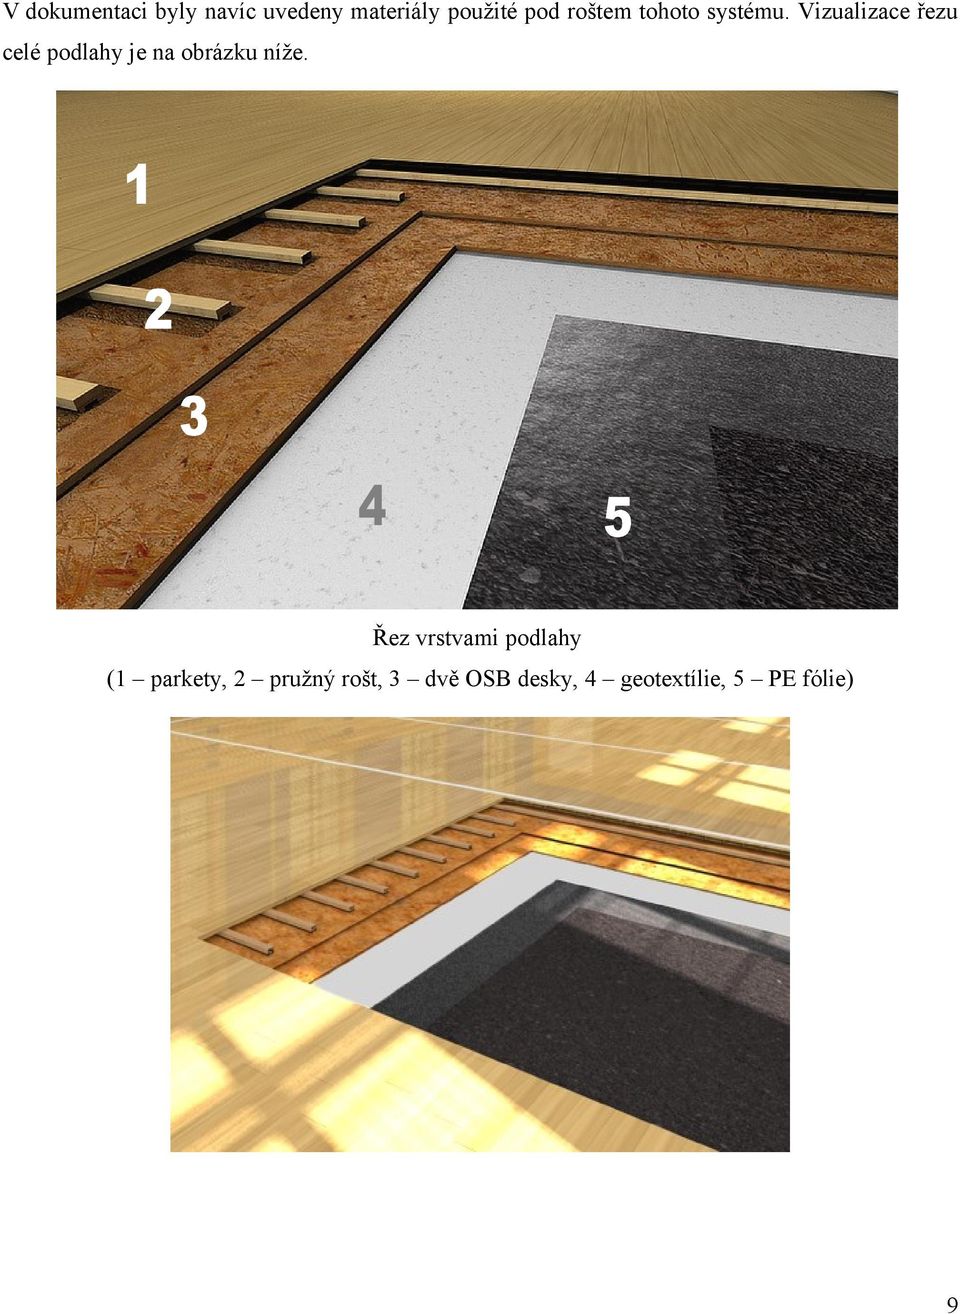 Vizualizace řezu celé podlahy je na obrázku níže.